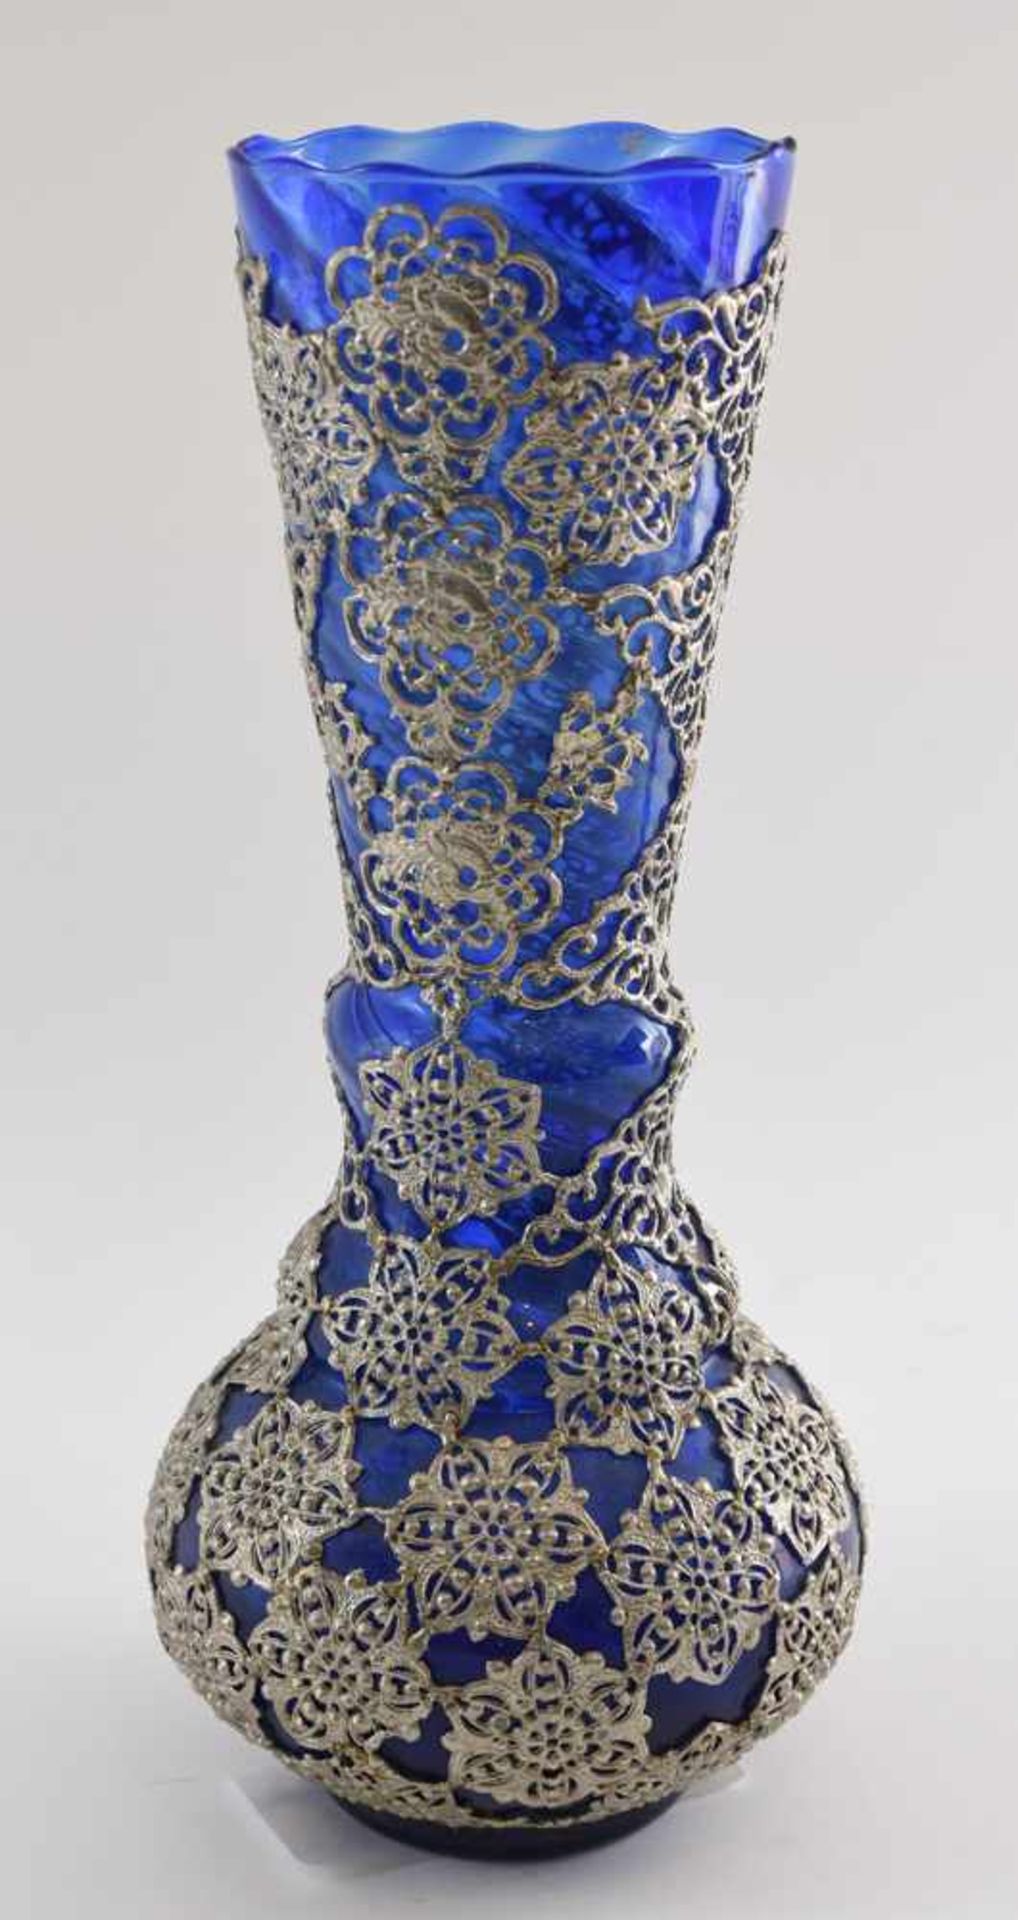 VASE, Blauglas mit dekorativen Metallapplikationen, erste Hälfte 20. Jahrhundert Bauchige, nach oben